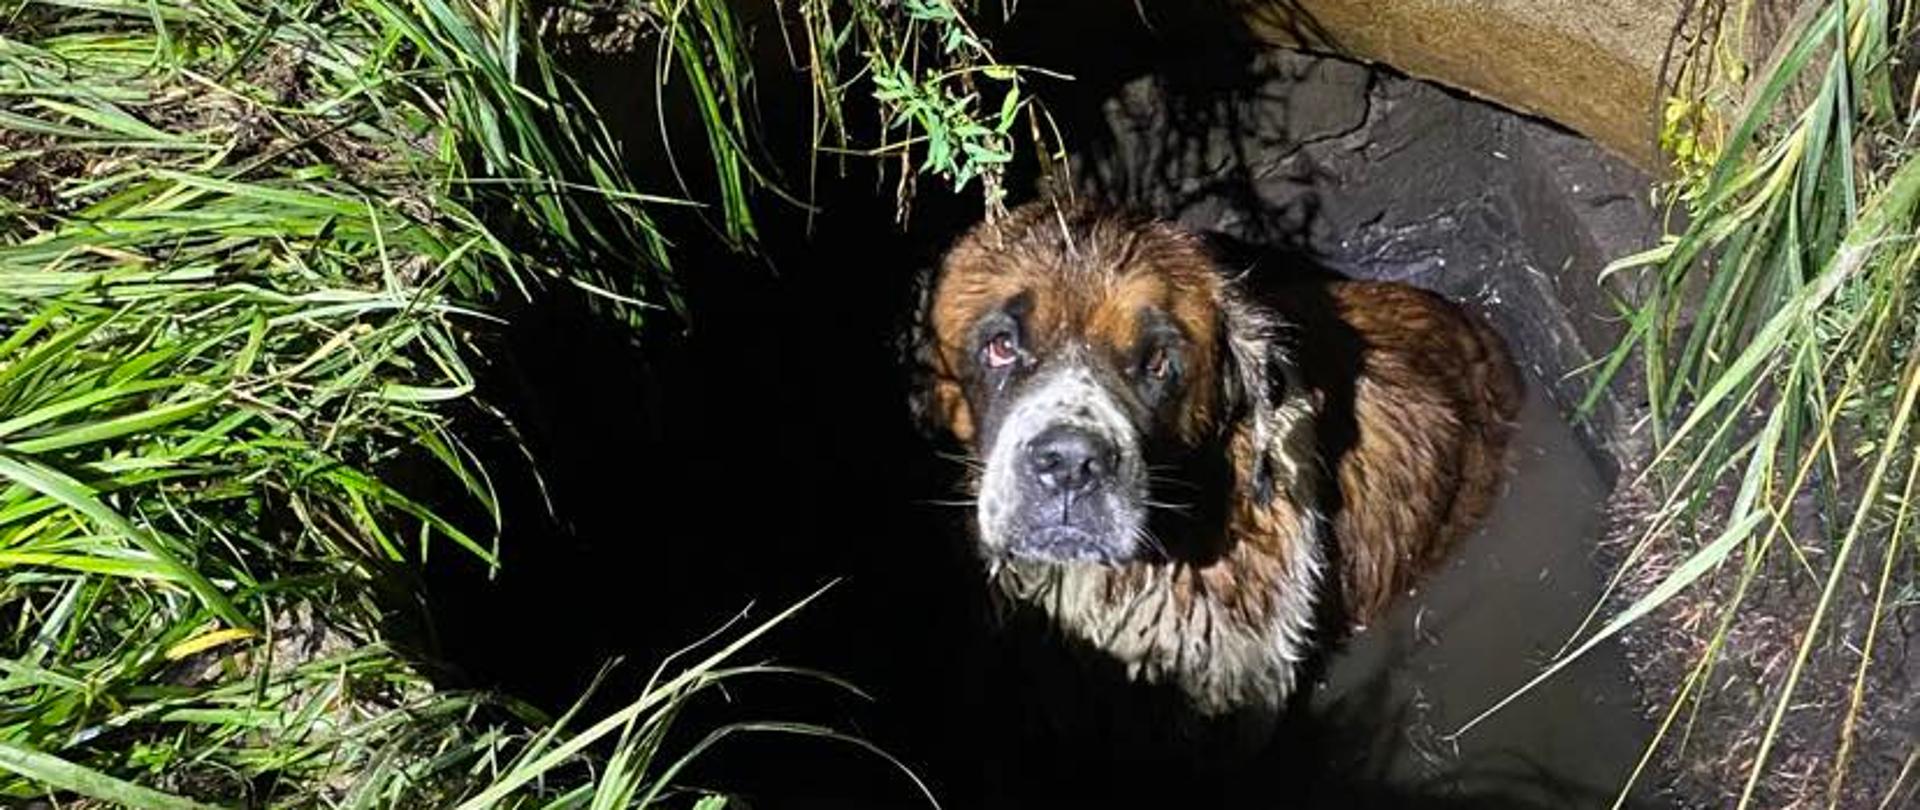 Na zdjęciu pies znajdujący się w studni, częściowo zanurzony w wodzie.